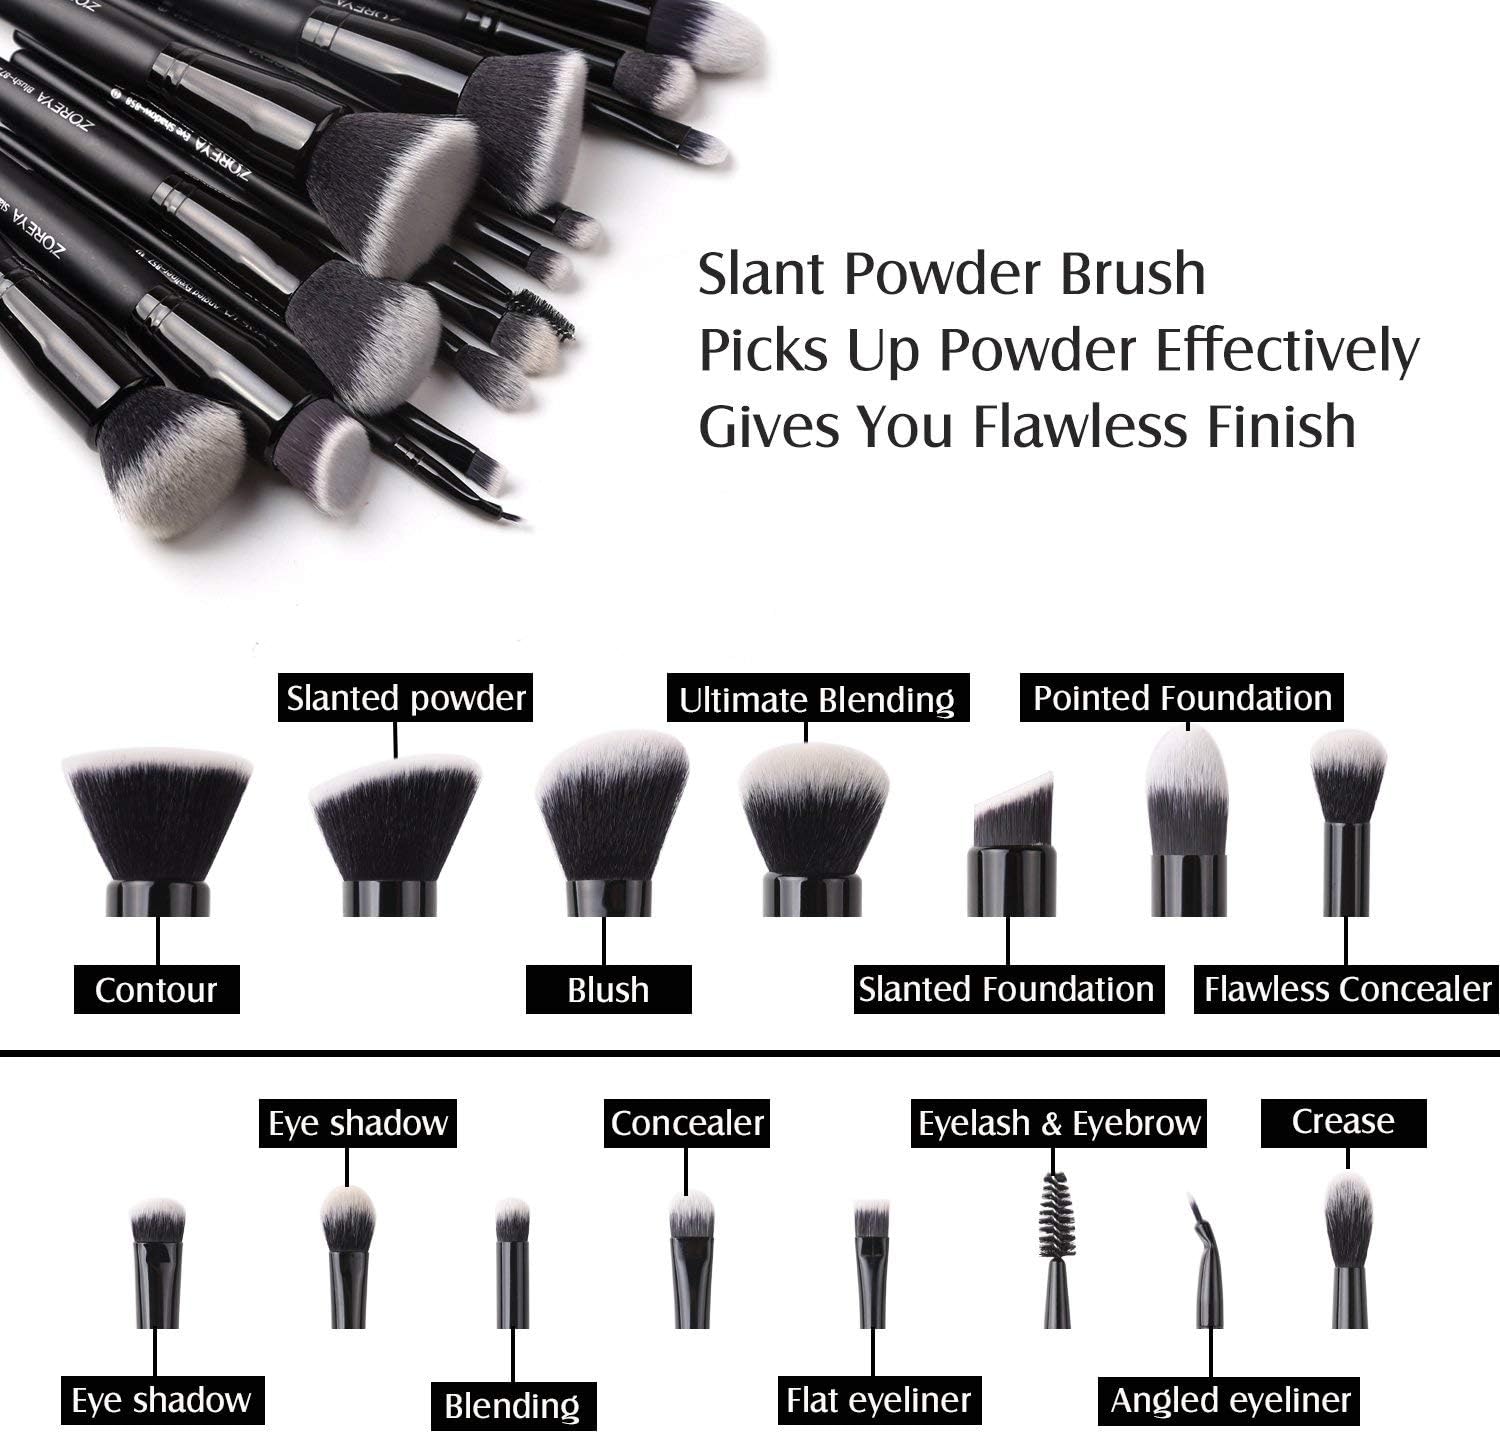 Professional Elf Makeup Brushesset, Dense Eye Makeup Brush Kit, Face Makeup Brushes, Foundation Contour Brush, Eyeshadow Blending Brush 15PCS (Black)